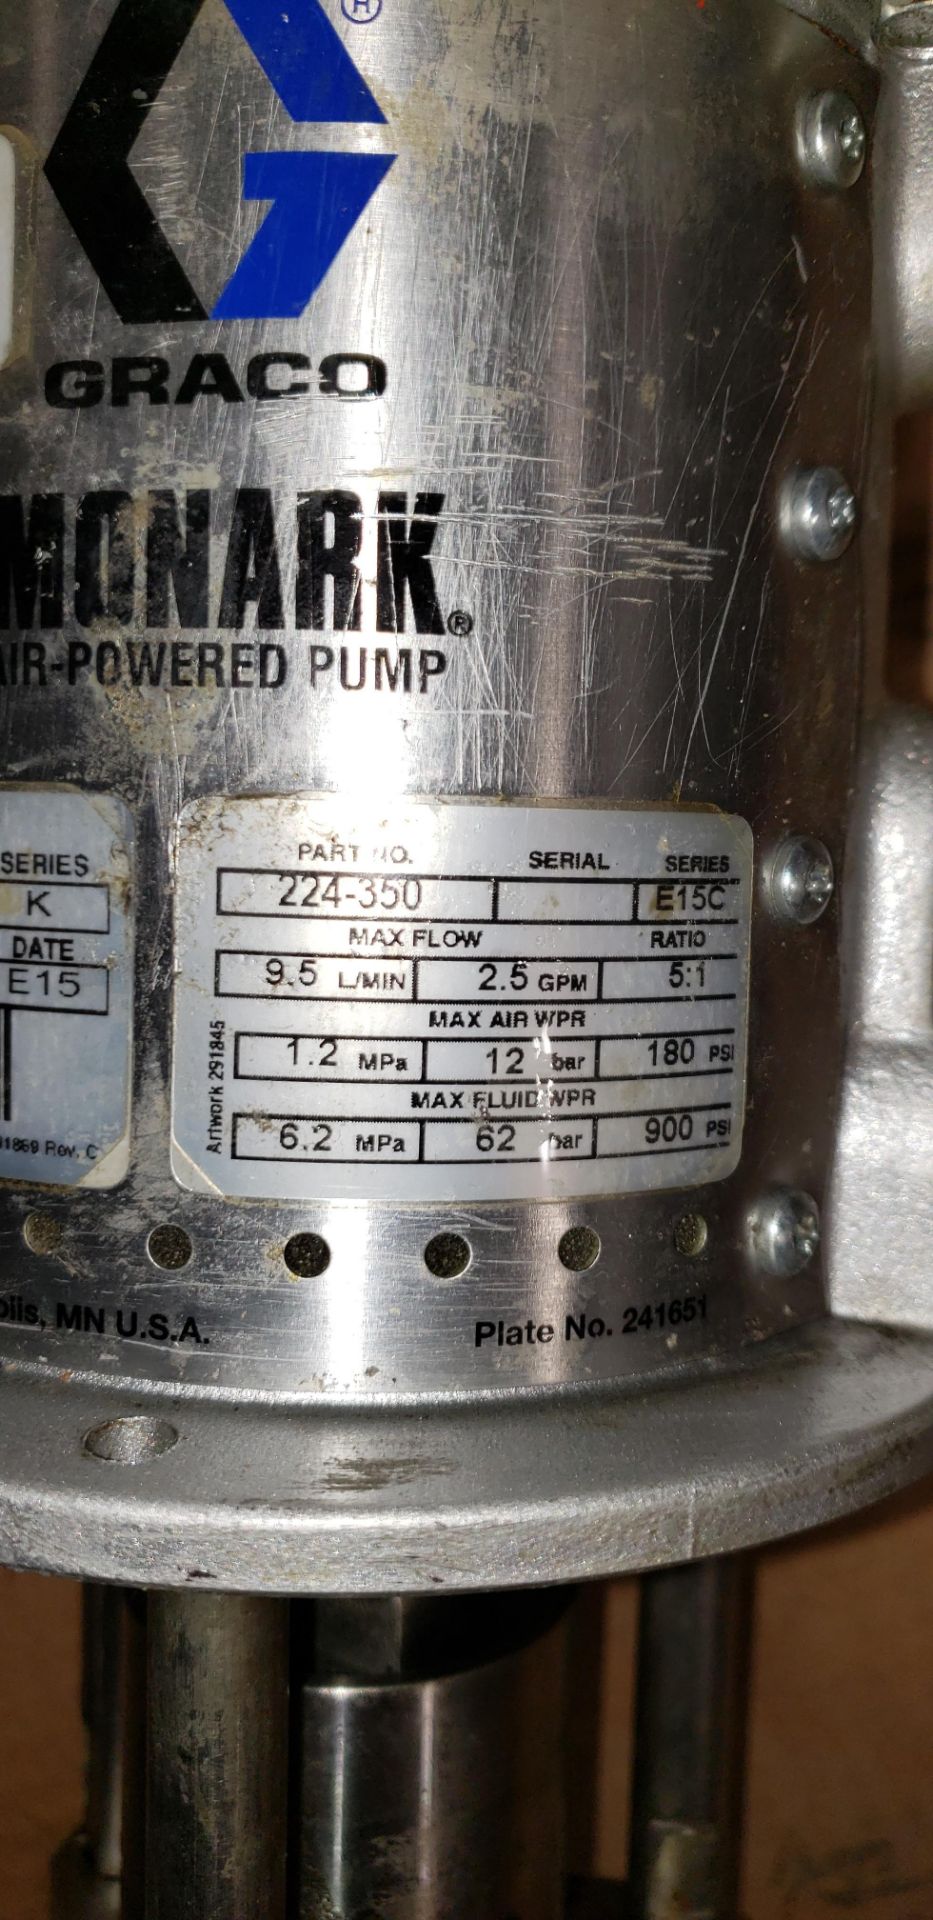 Graco Drum Pump AIR POWERED MODEL MONARK 9.5L/MIN MAX FLOW - Image 18 of 19